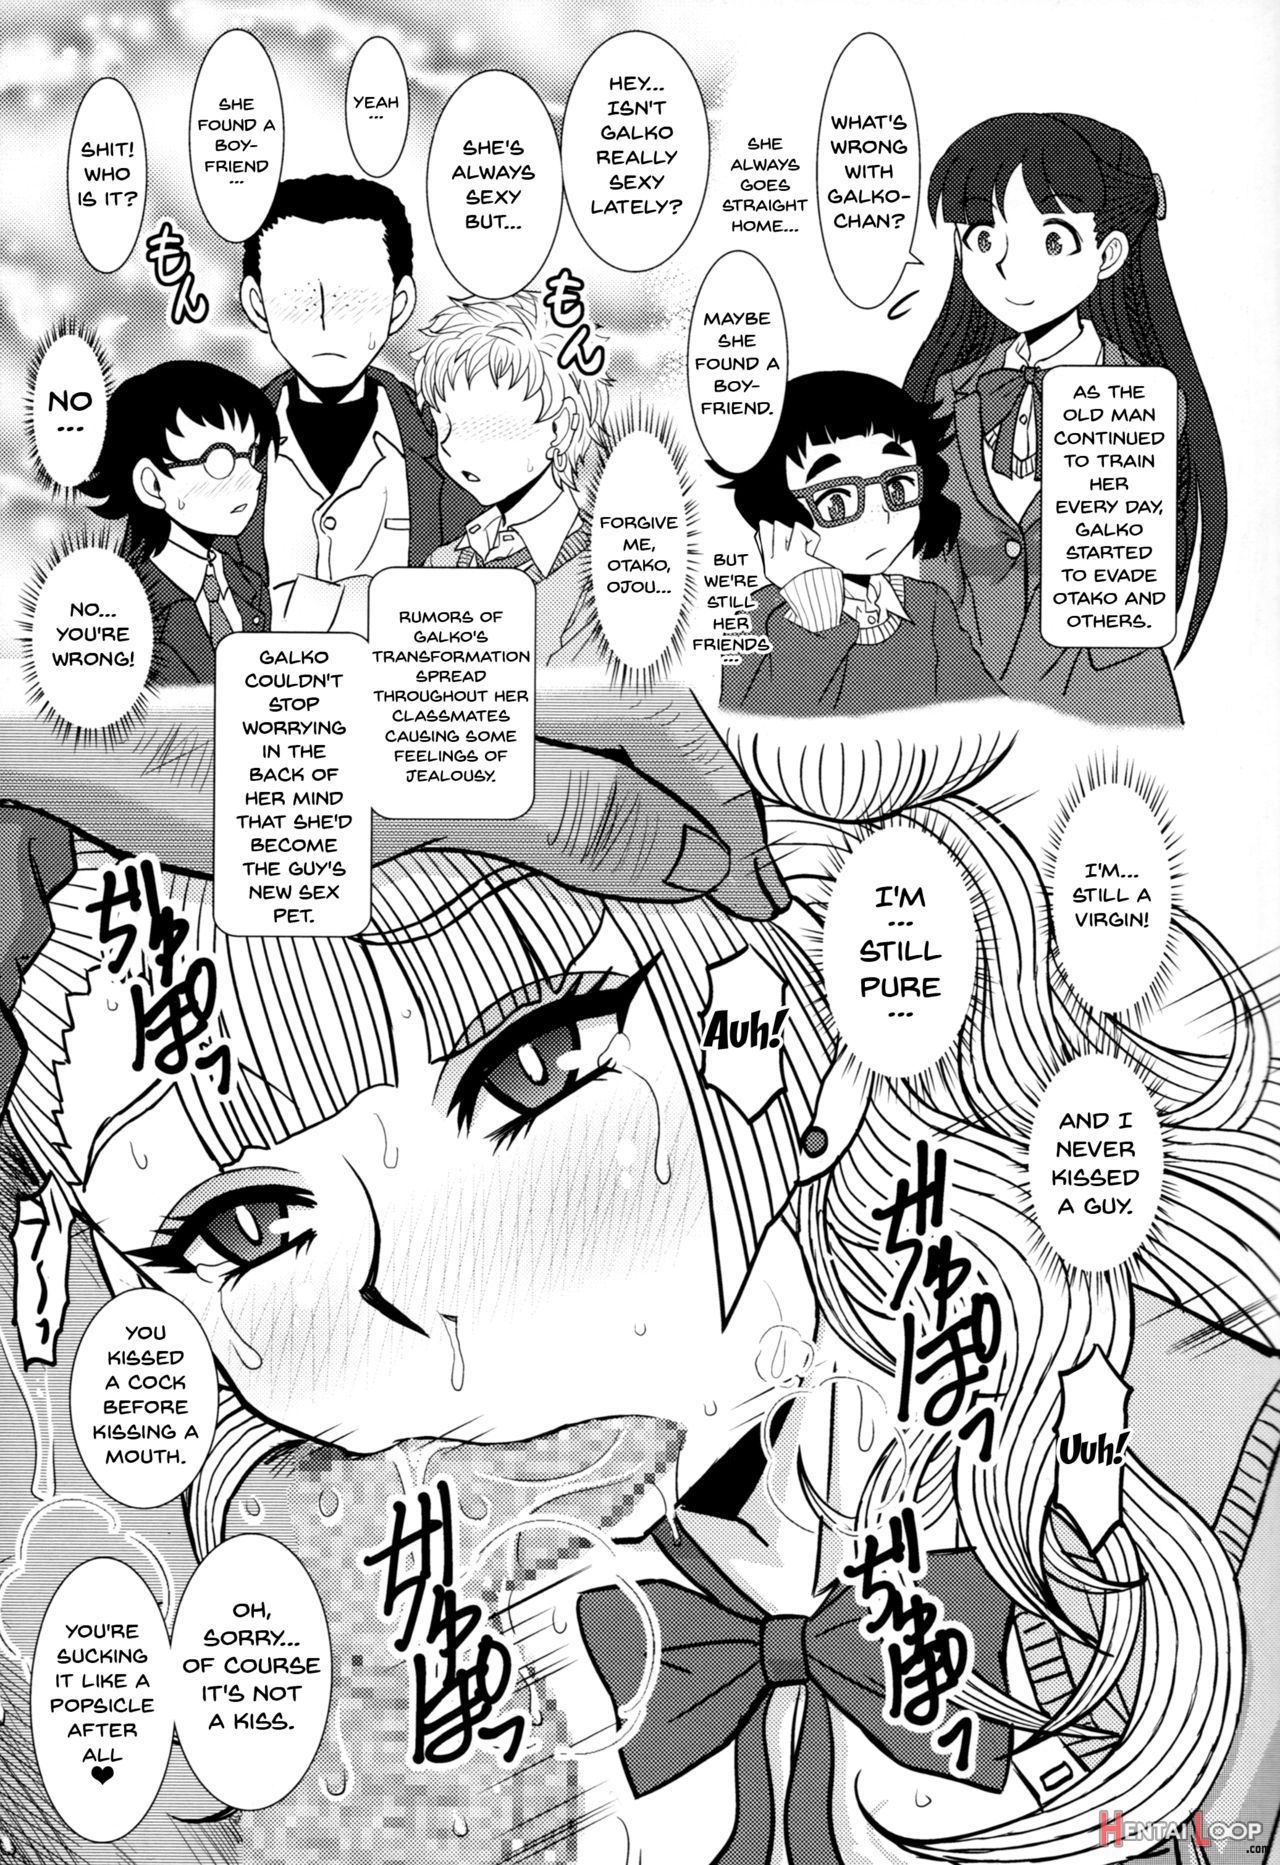 Ikenai! Galkochan page 8